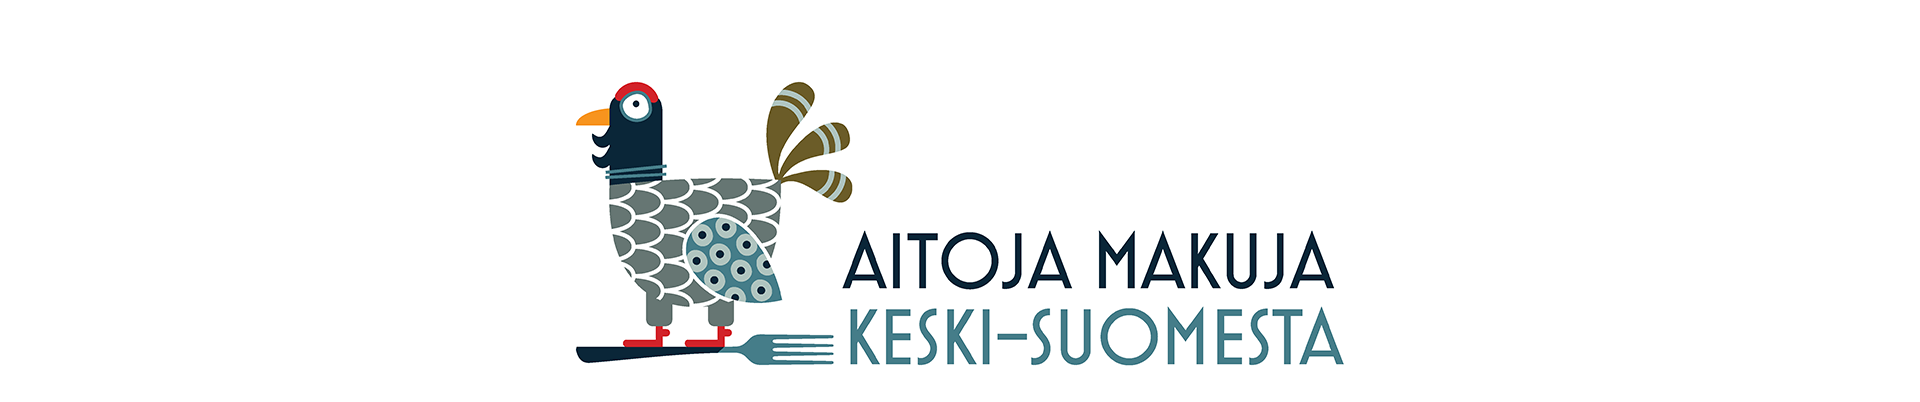 Aitoja makuja Keski-Suomesta -logo vaaka sivustolle